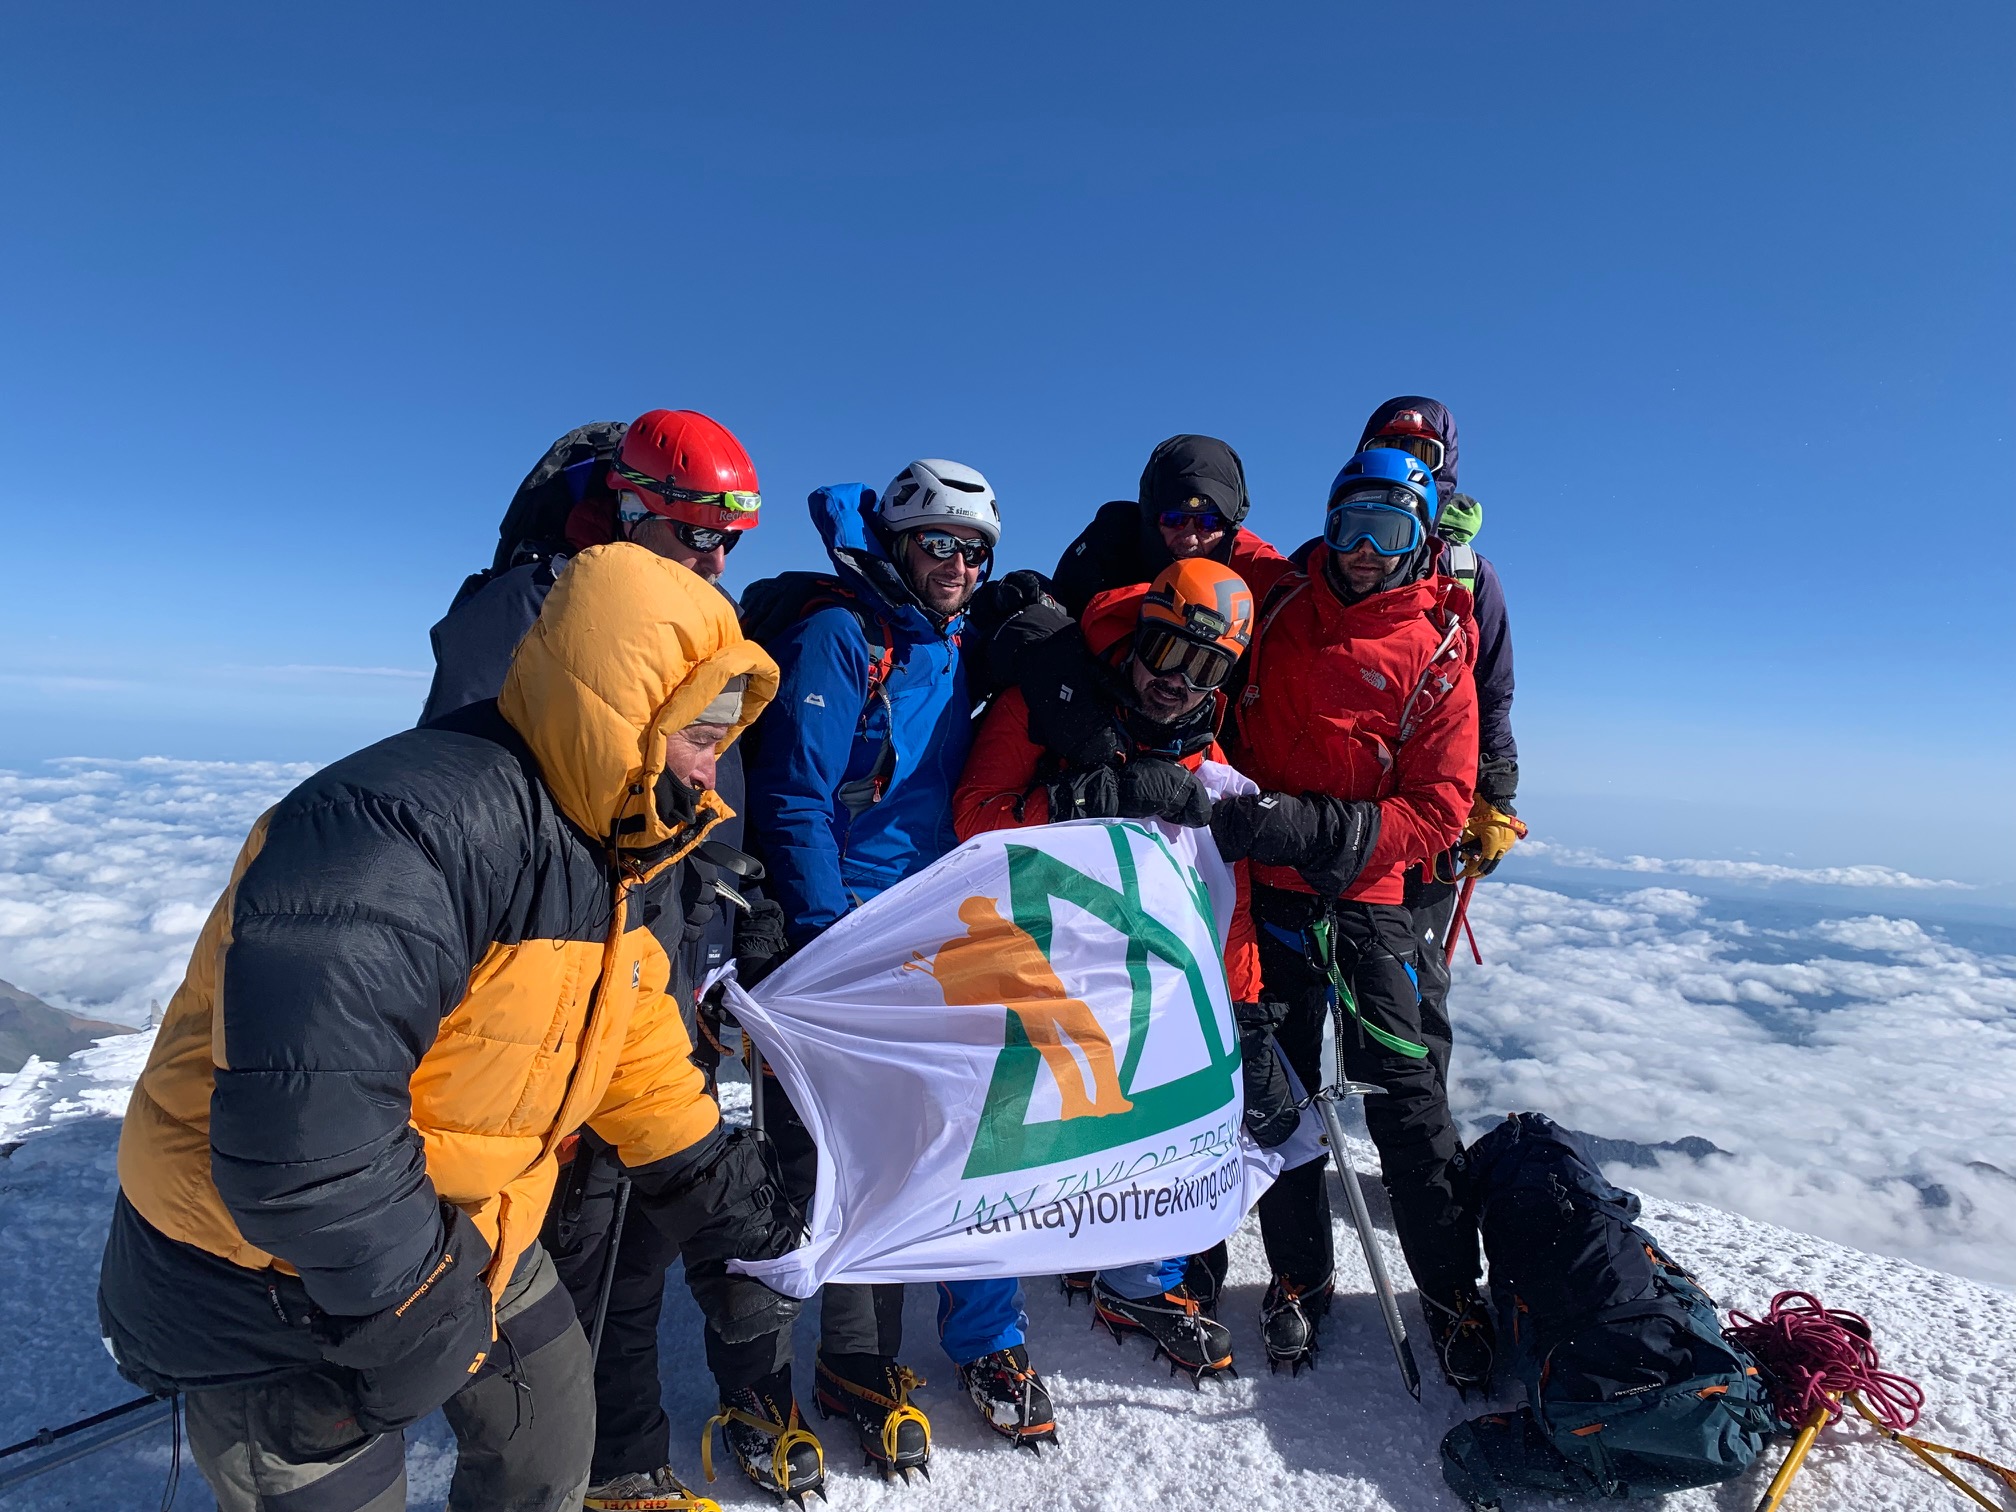 Ian Taylor Trekking team on the summit of Elbrus